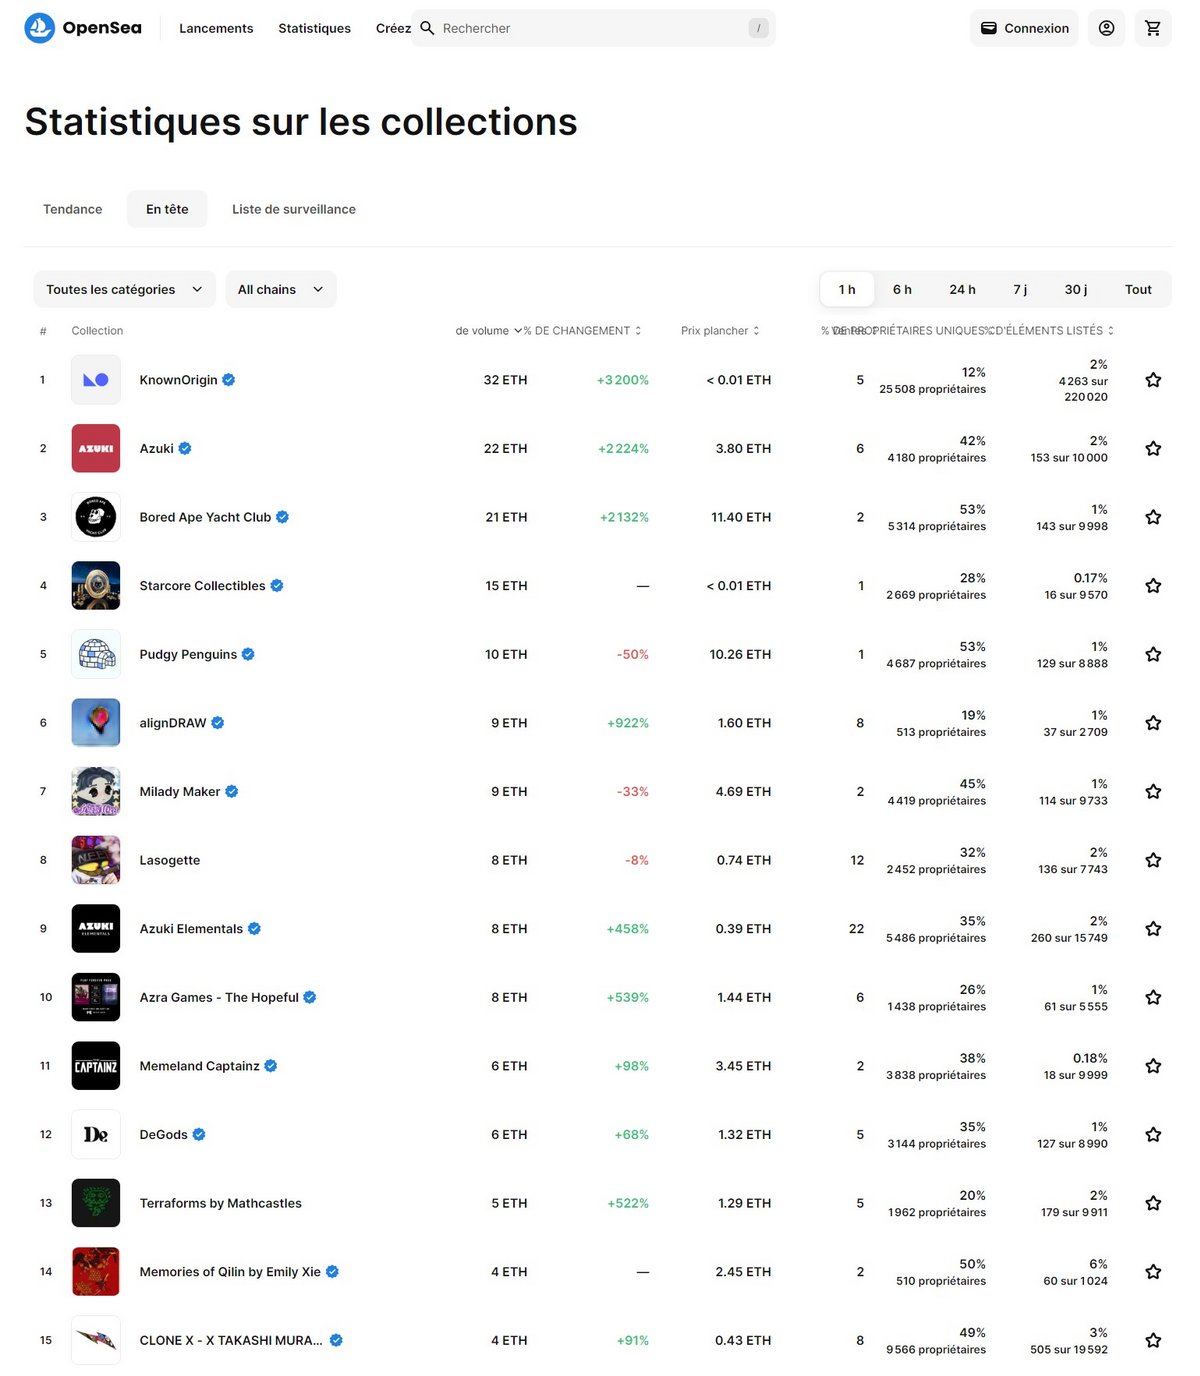 Statistiques sur les collections : volume et prix plancher - OpenSea